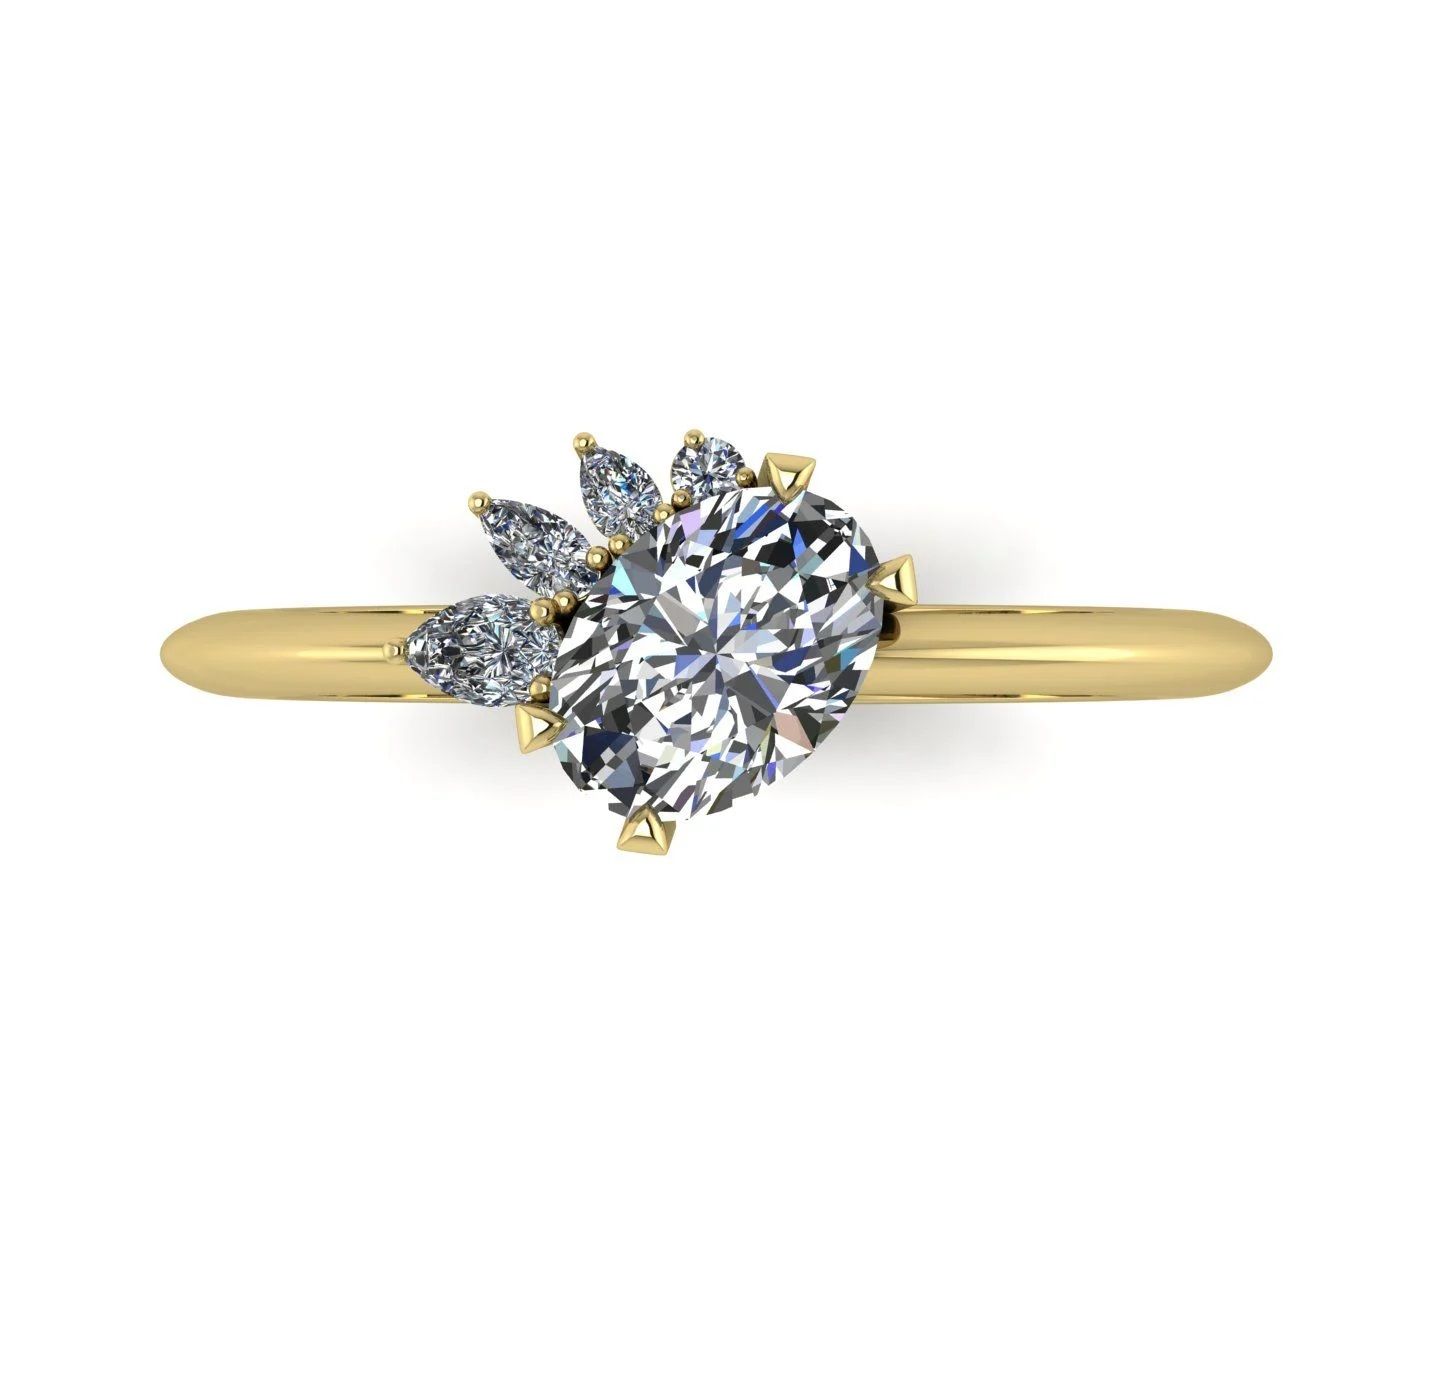 The Selene asymmetrical engagement ring